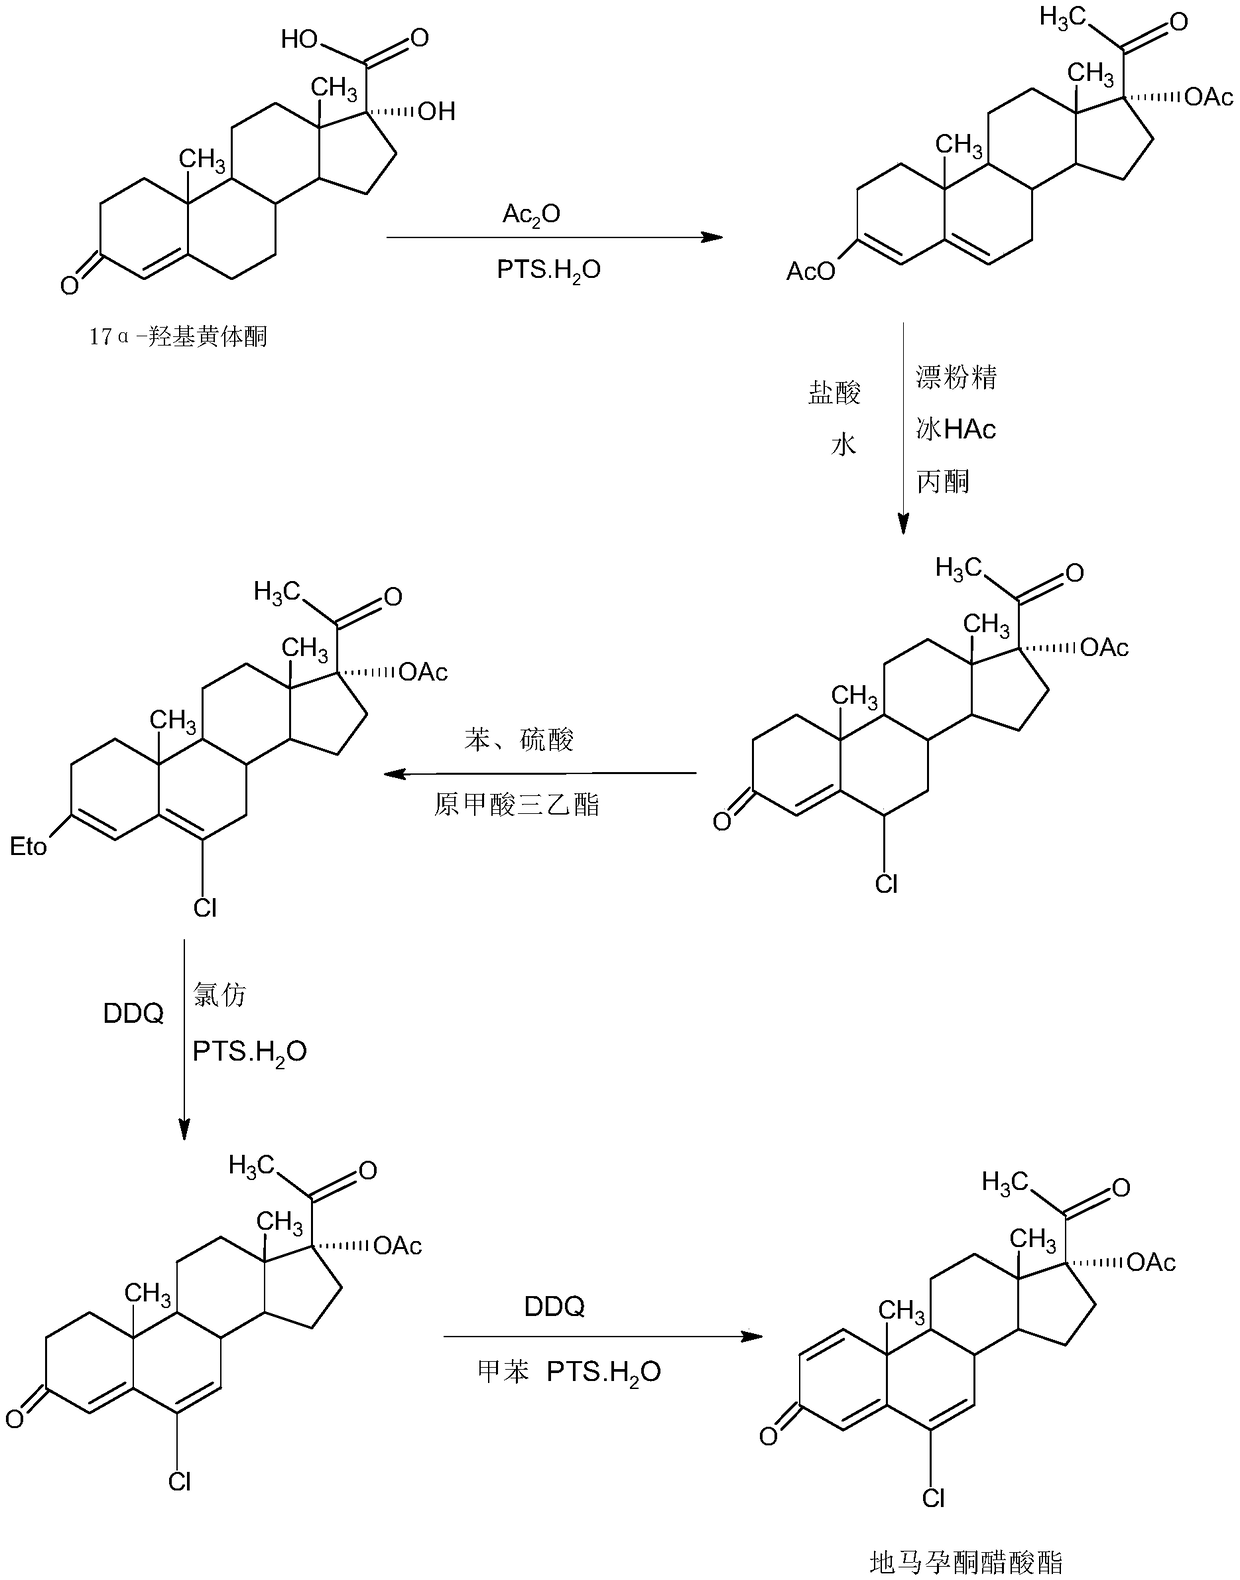 Method for preparing delmadinone acetate